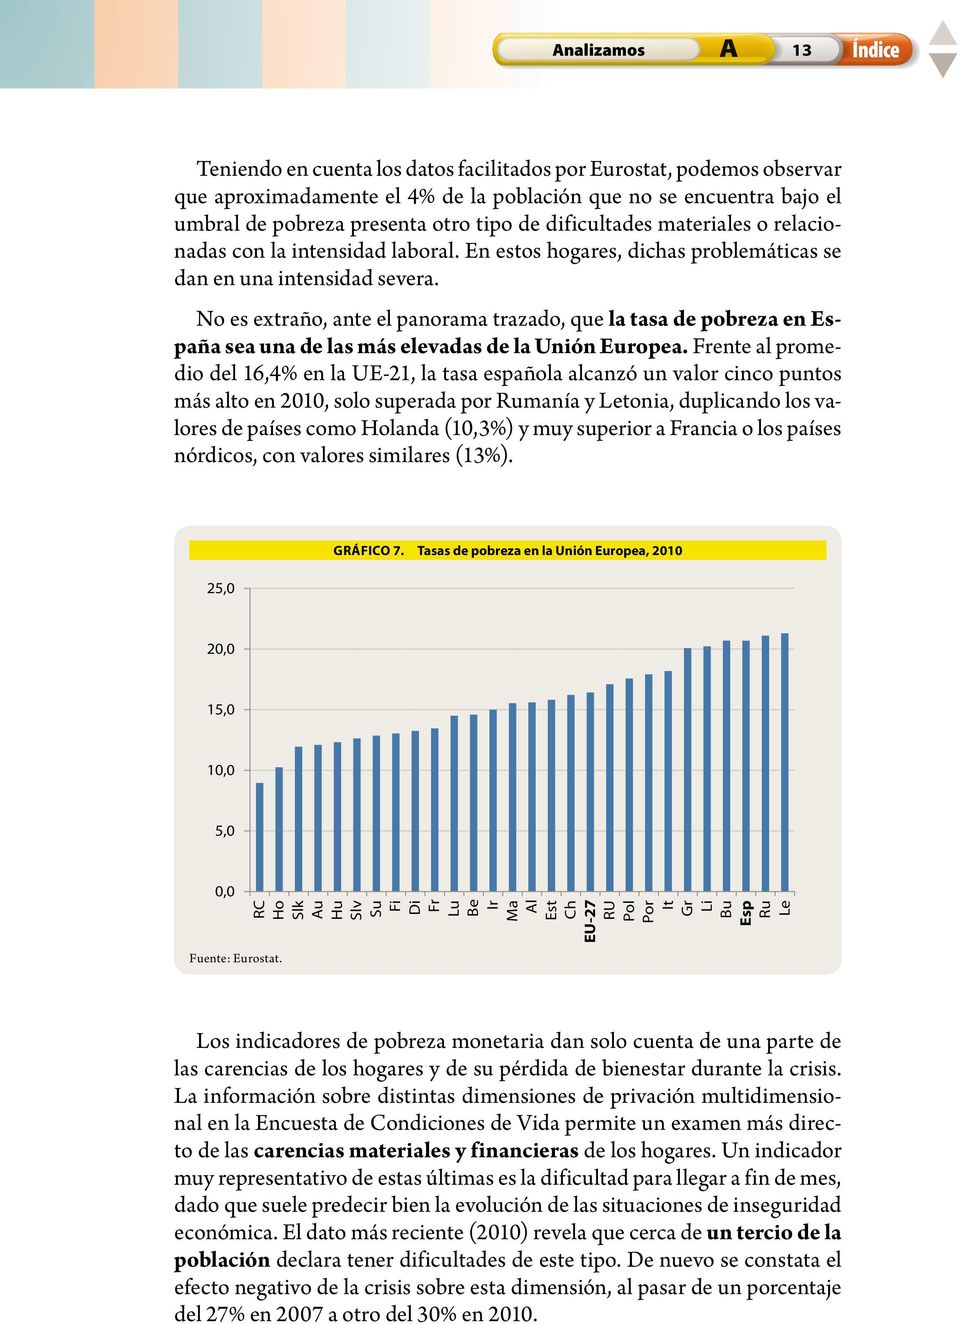 No es extraño, ante el panorama trazado, que la tasa de pobreza en España sea una de las más elevadas de la Unión Europea.